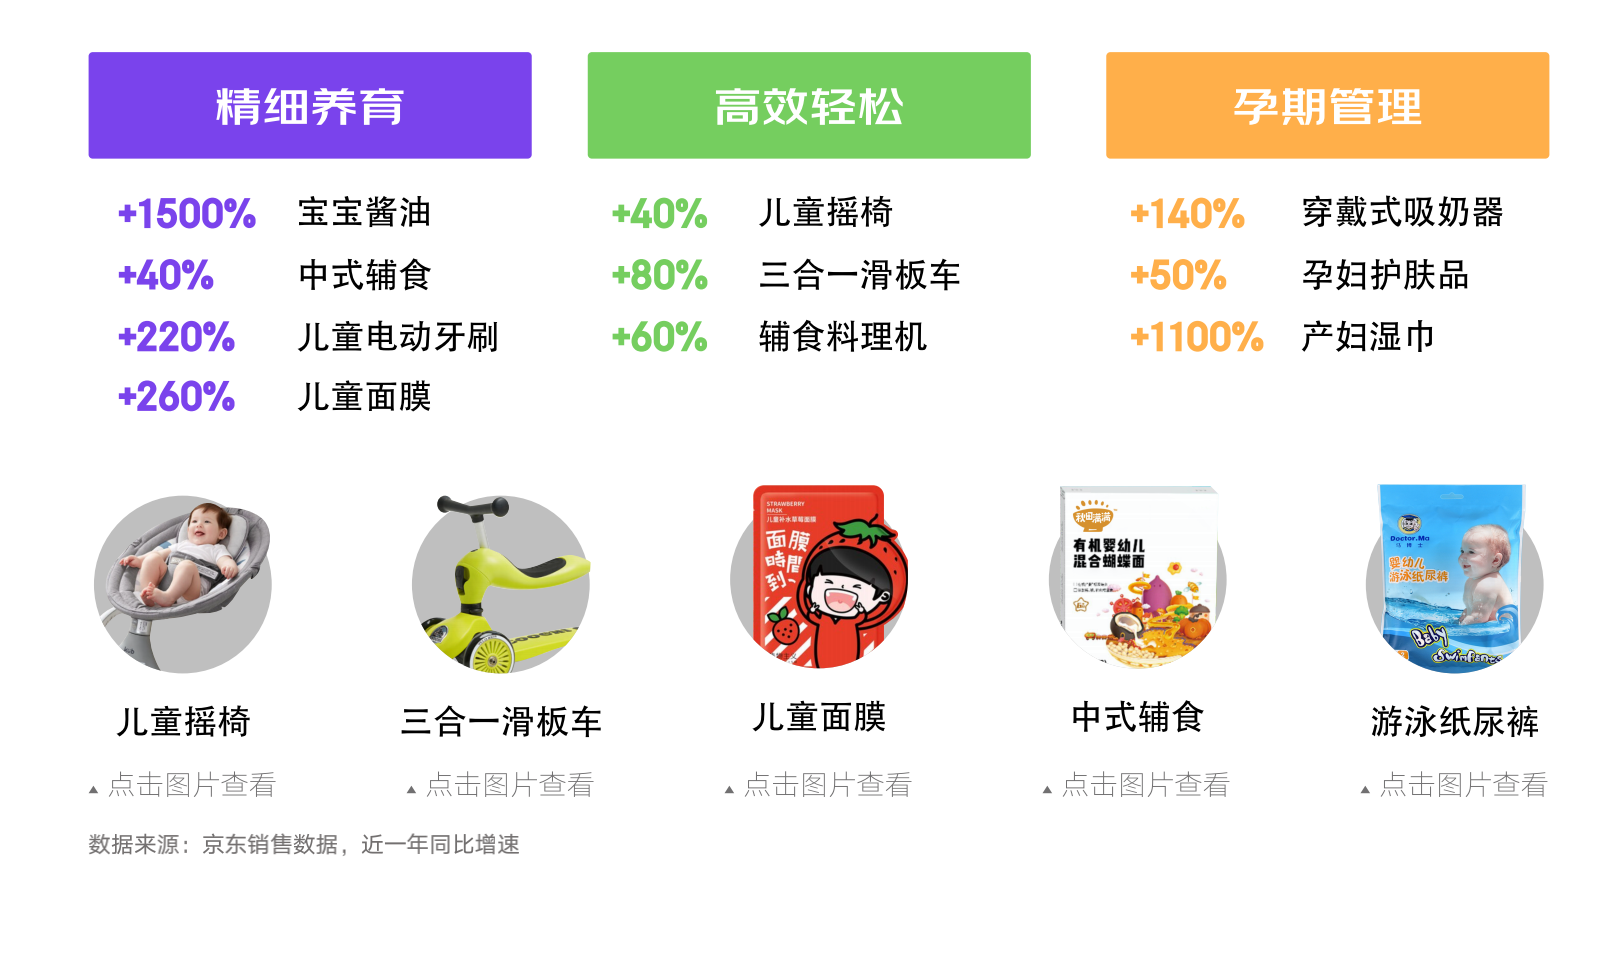 京东618发布消费新趋势 五大新场景助力品牌挖掘新增量